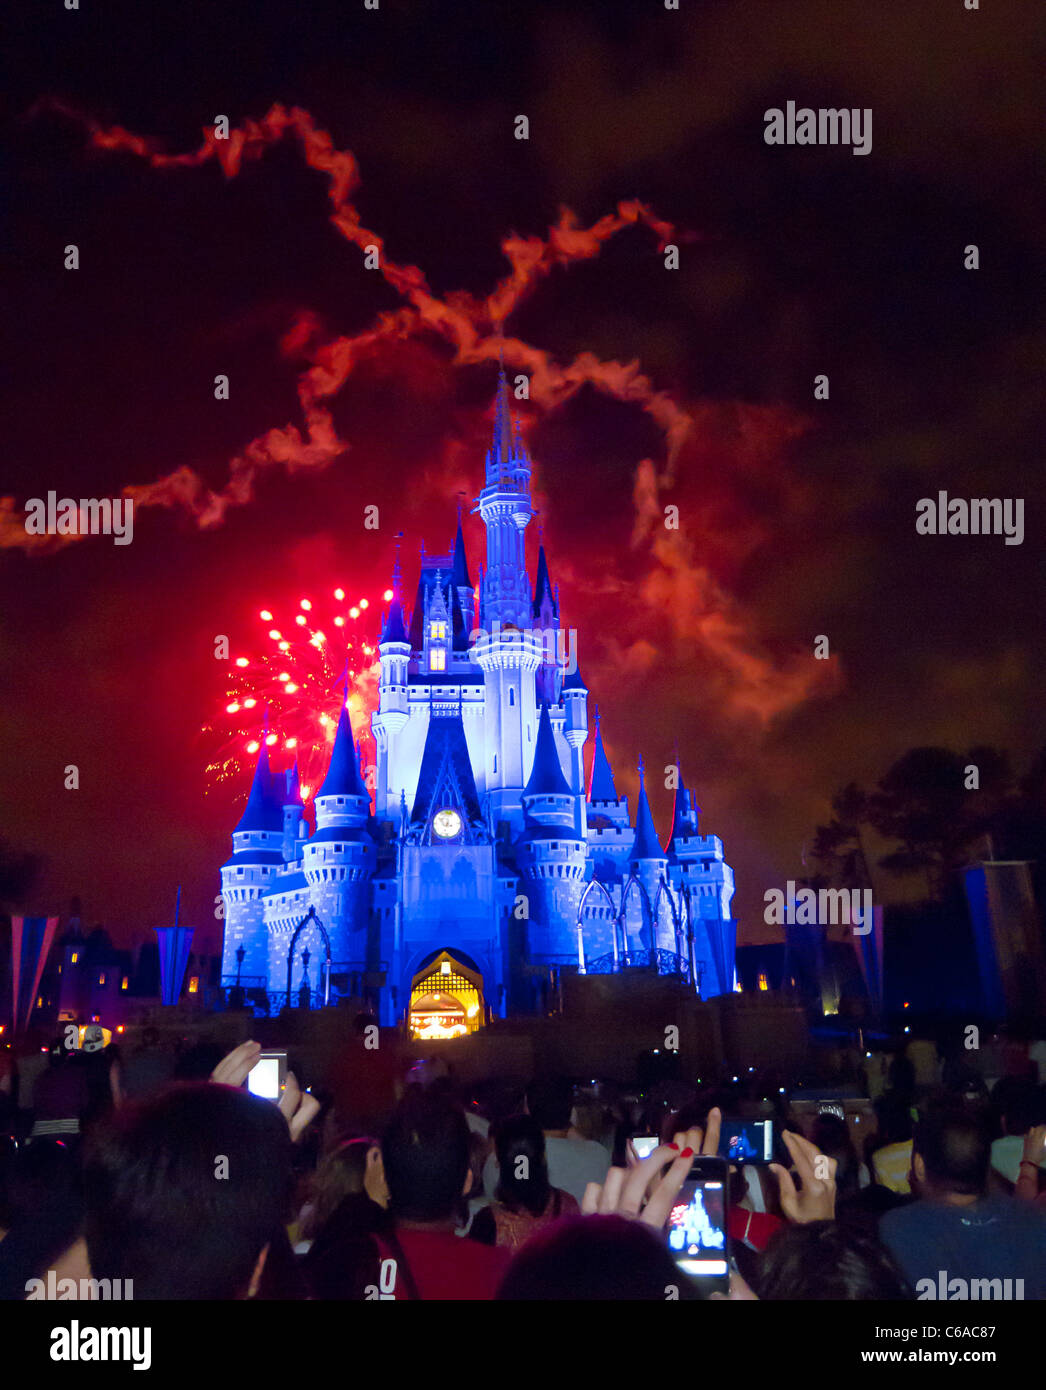 Fuochi d'artificio esplodere oltre a Cenerentola del castello e il Regno Magico di Disney World, FL, mentre la luce mostra riproduce attraverso mura del castello Foto Stock